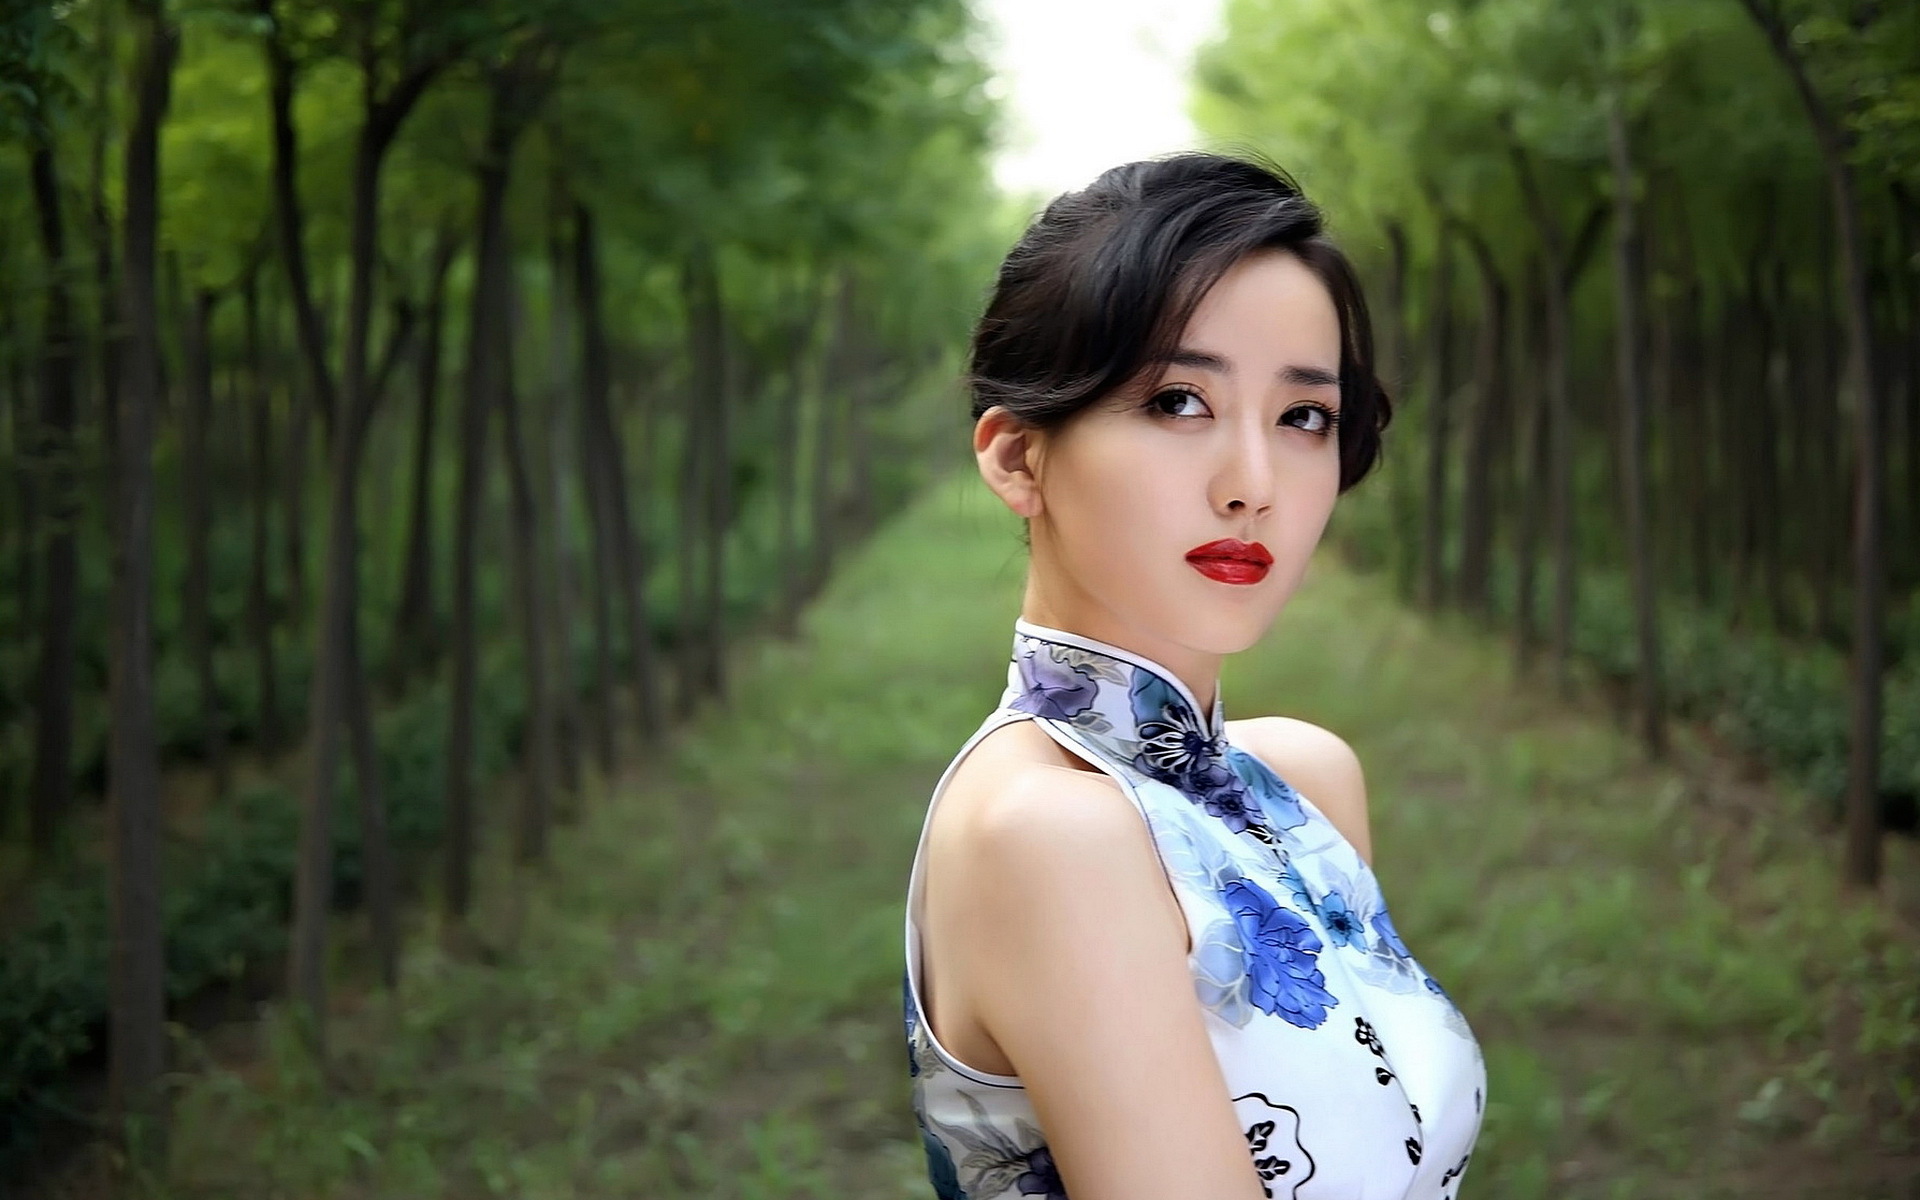 Descarga gratuita de fondo de pantalla para móvil de Mujeres, Hú Yǐng Yí.